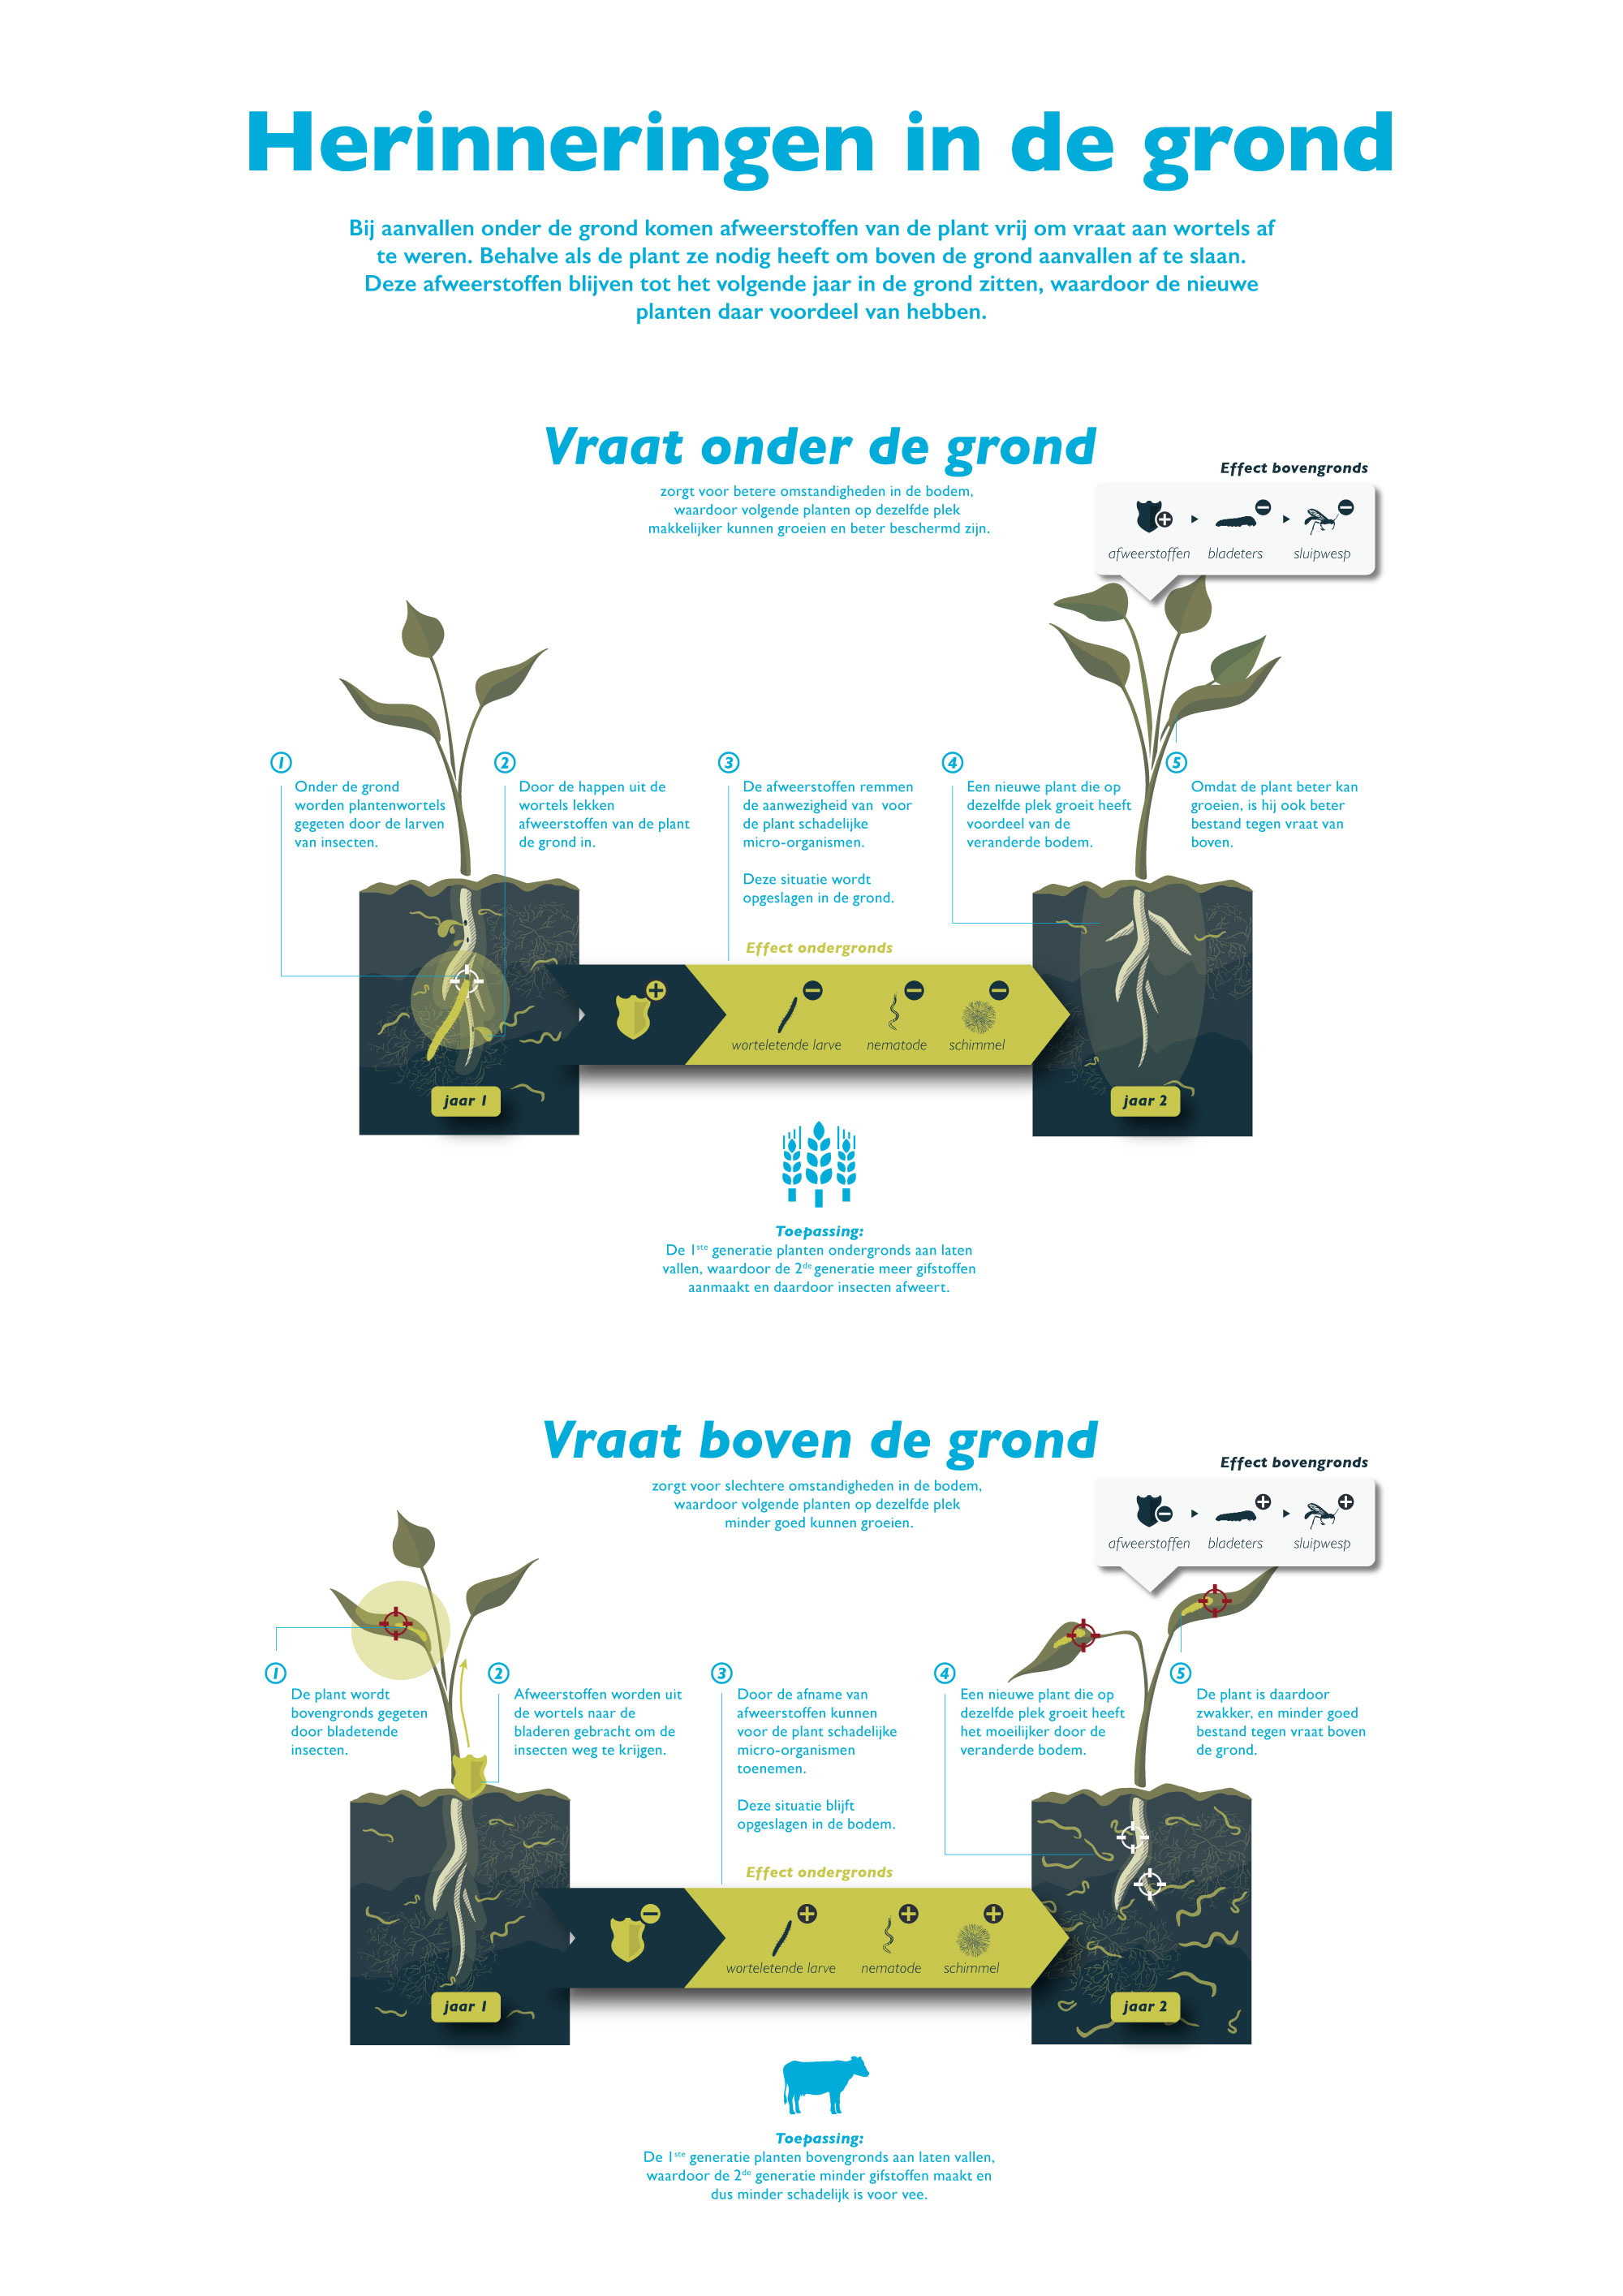 Afweerstoffen in de grond - Invloed van herbivoren op bodemleven - NIOO - design too many words - infographic